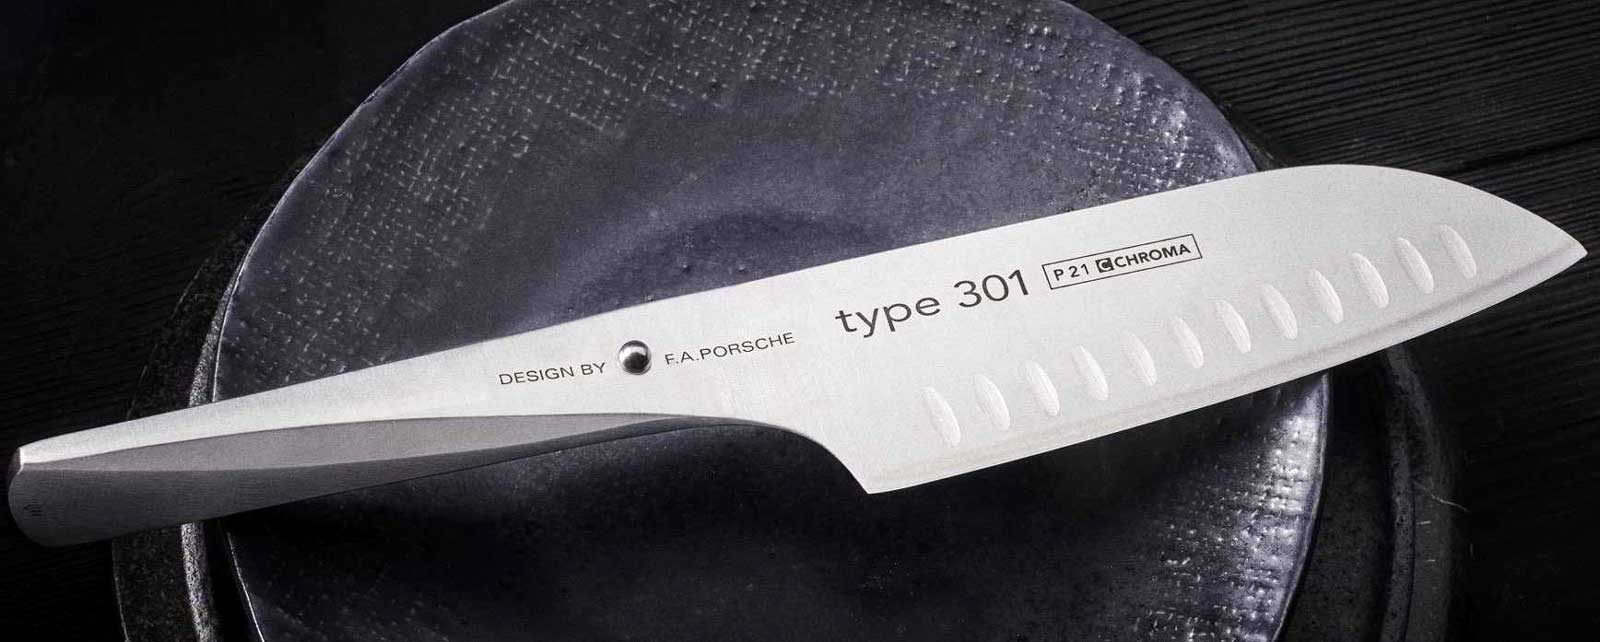 CHROMA tipe 301 - Desain oleh FA Porsche - pisau koki Pisau inovatif Tipe 301 ini, dirancang oleh perusahaan desain FA Porsche, membuka babak baru dalam pengembangan pisau dapur.